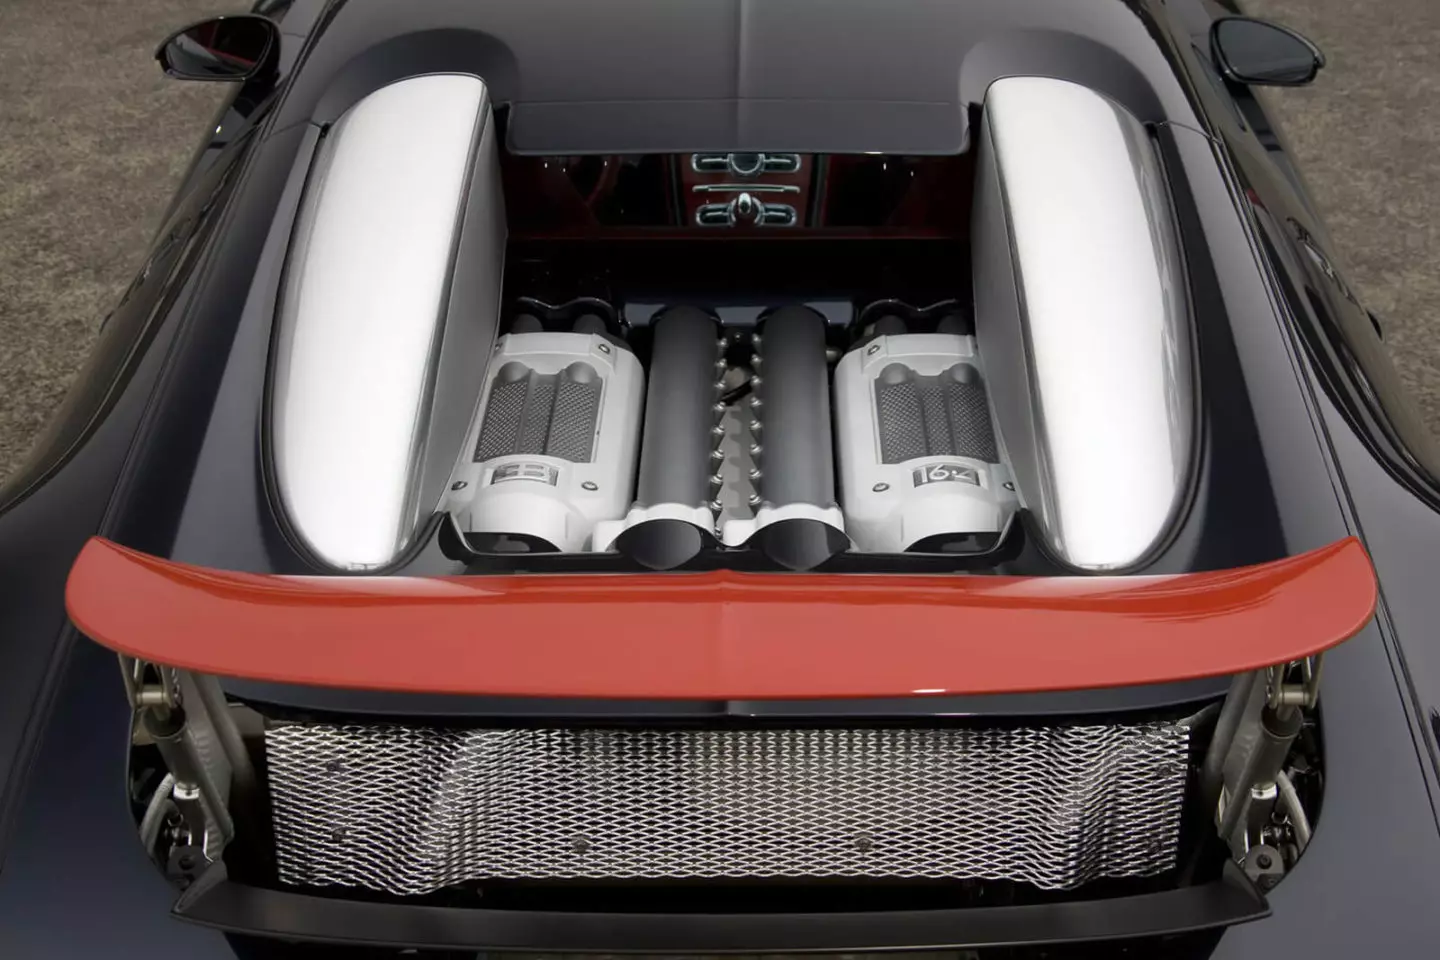 Bugatti Veyron W16 Engine